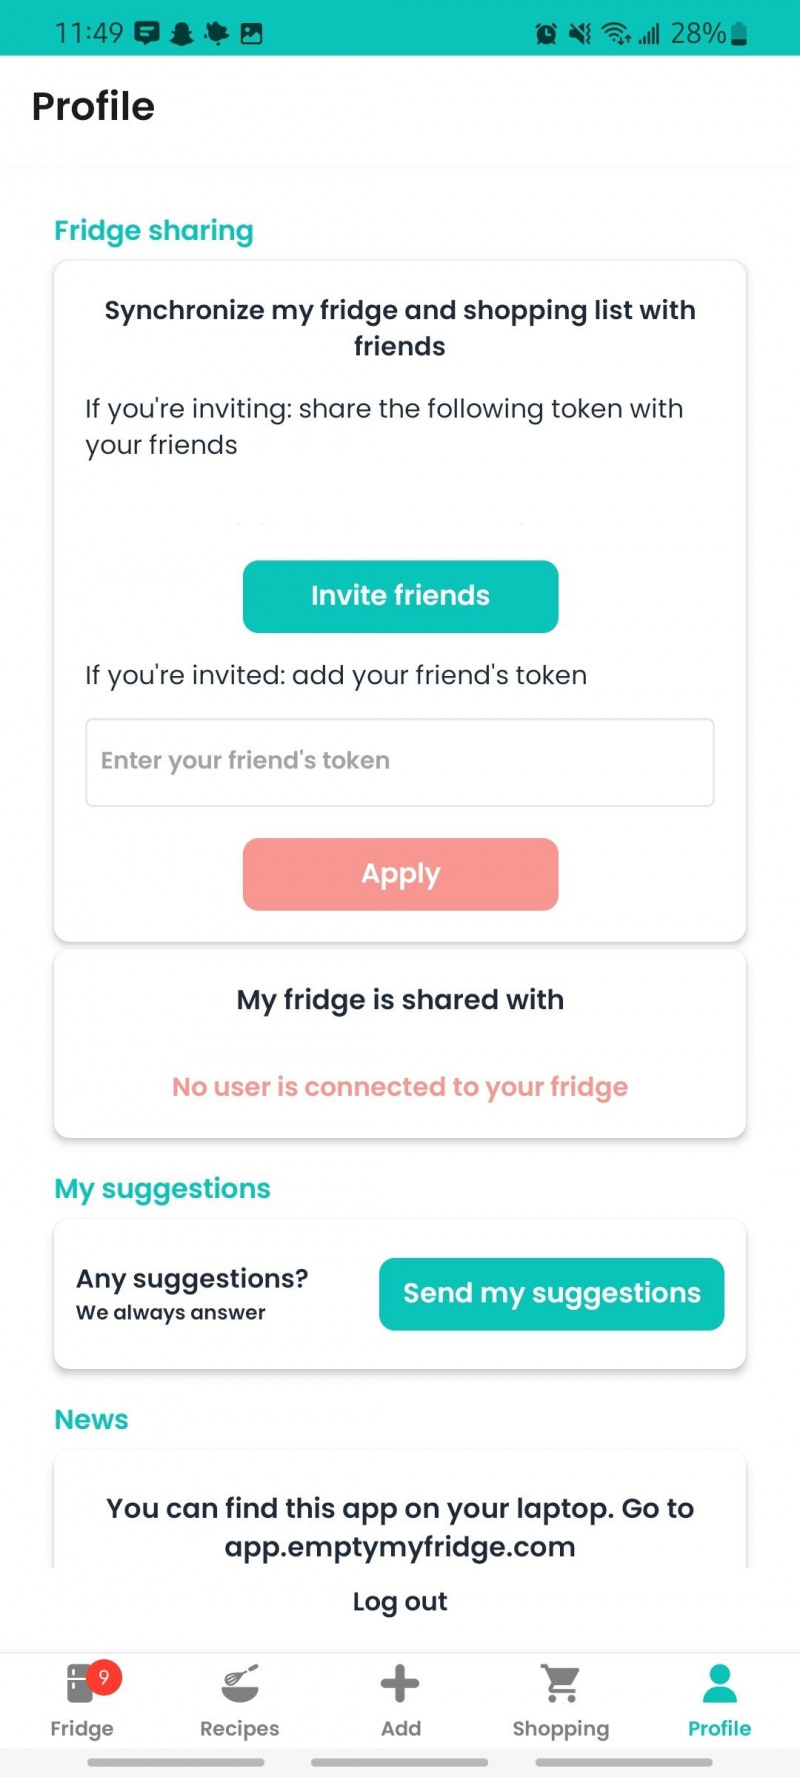   configurações de perfil onde você pode compartilhar sua geladeira e lista de compras com amigos